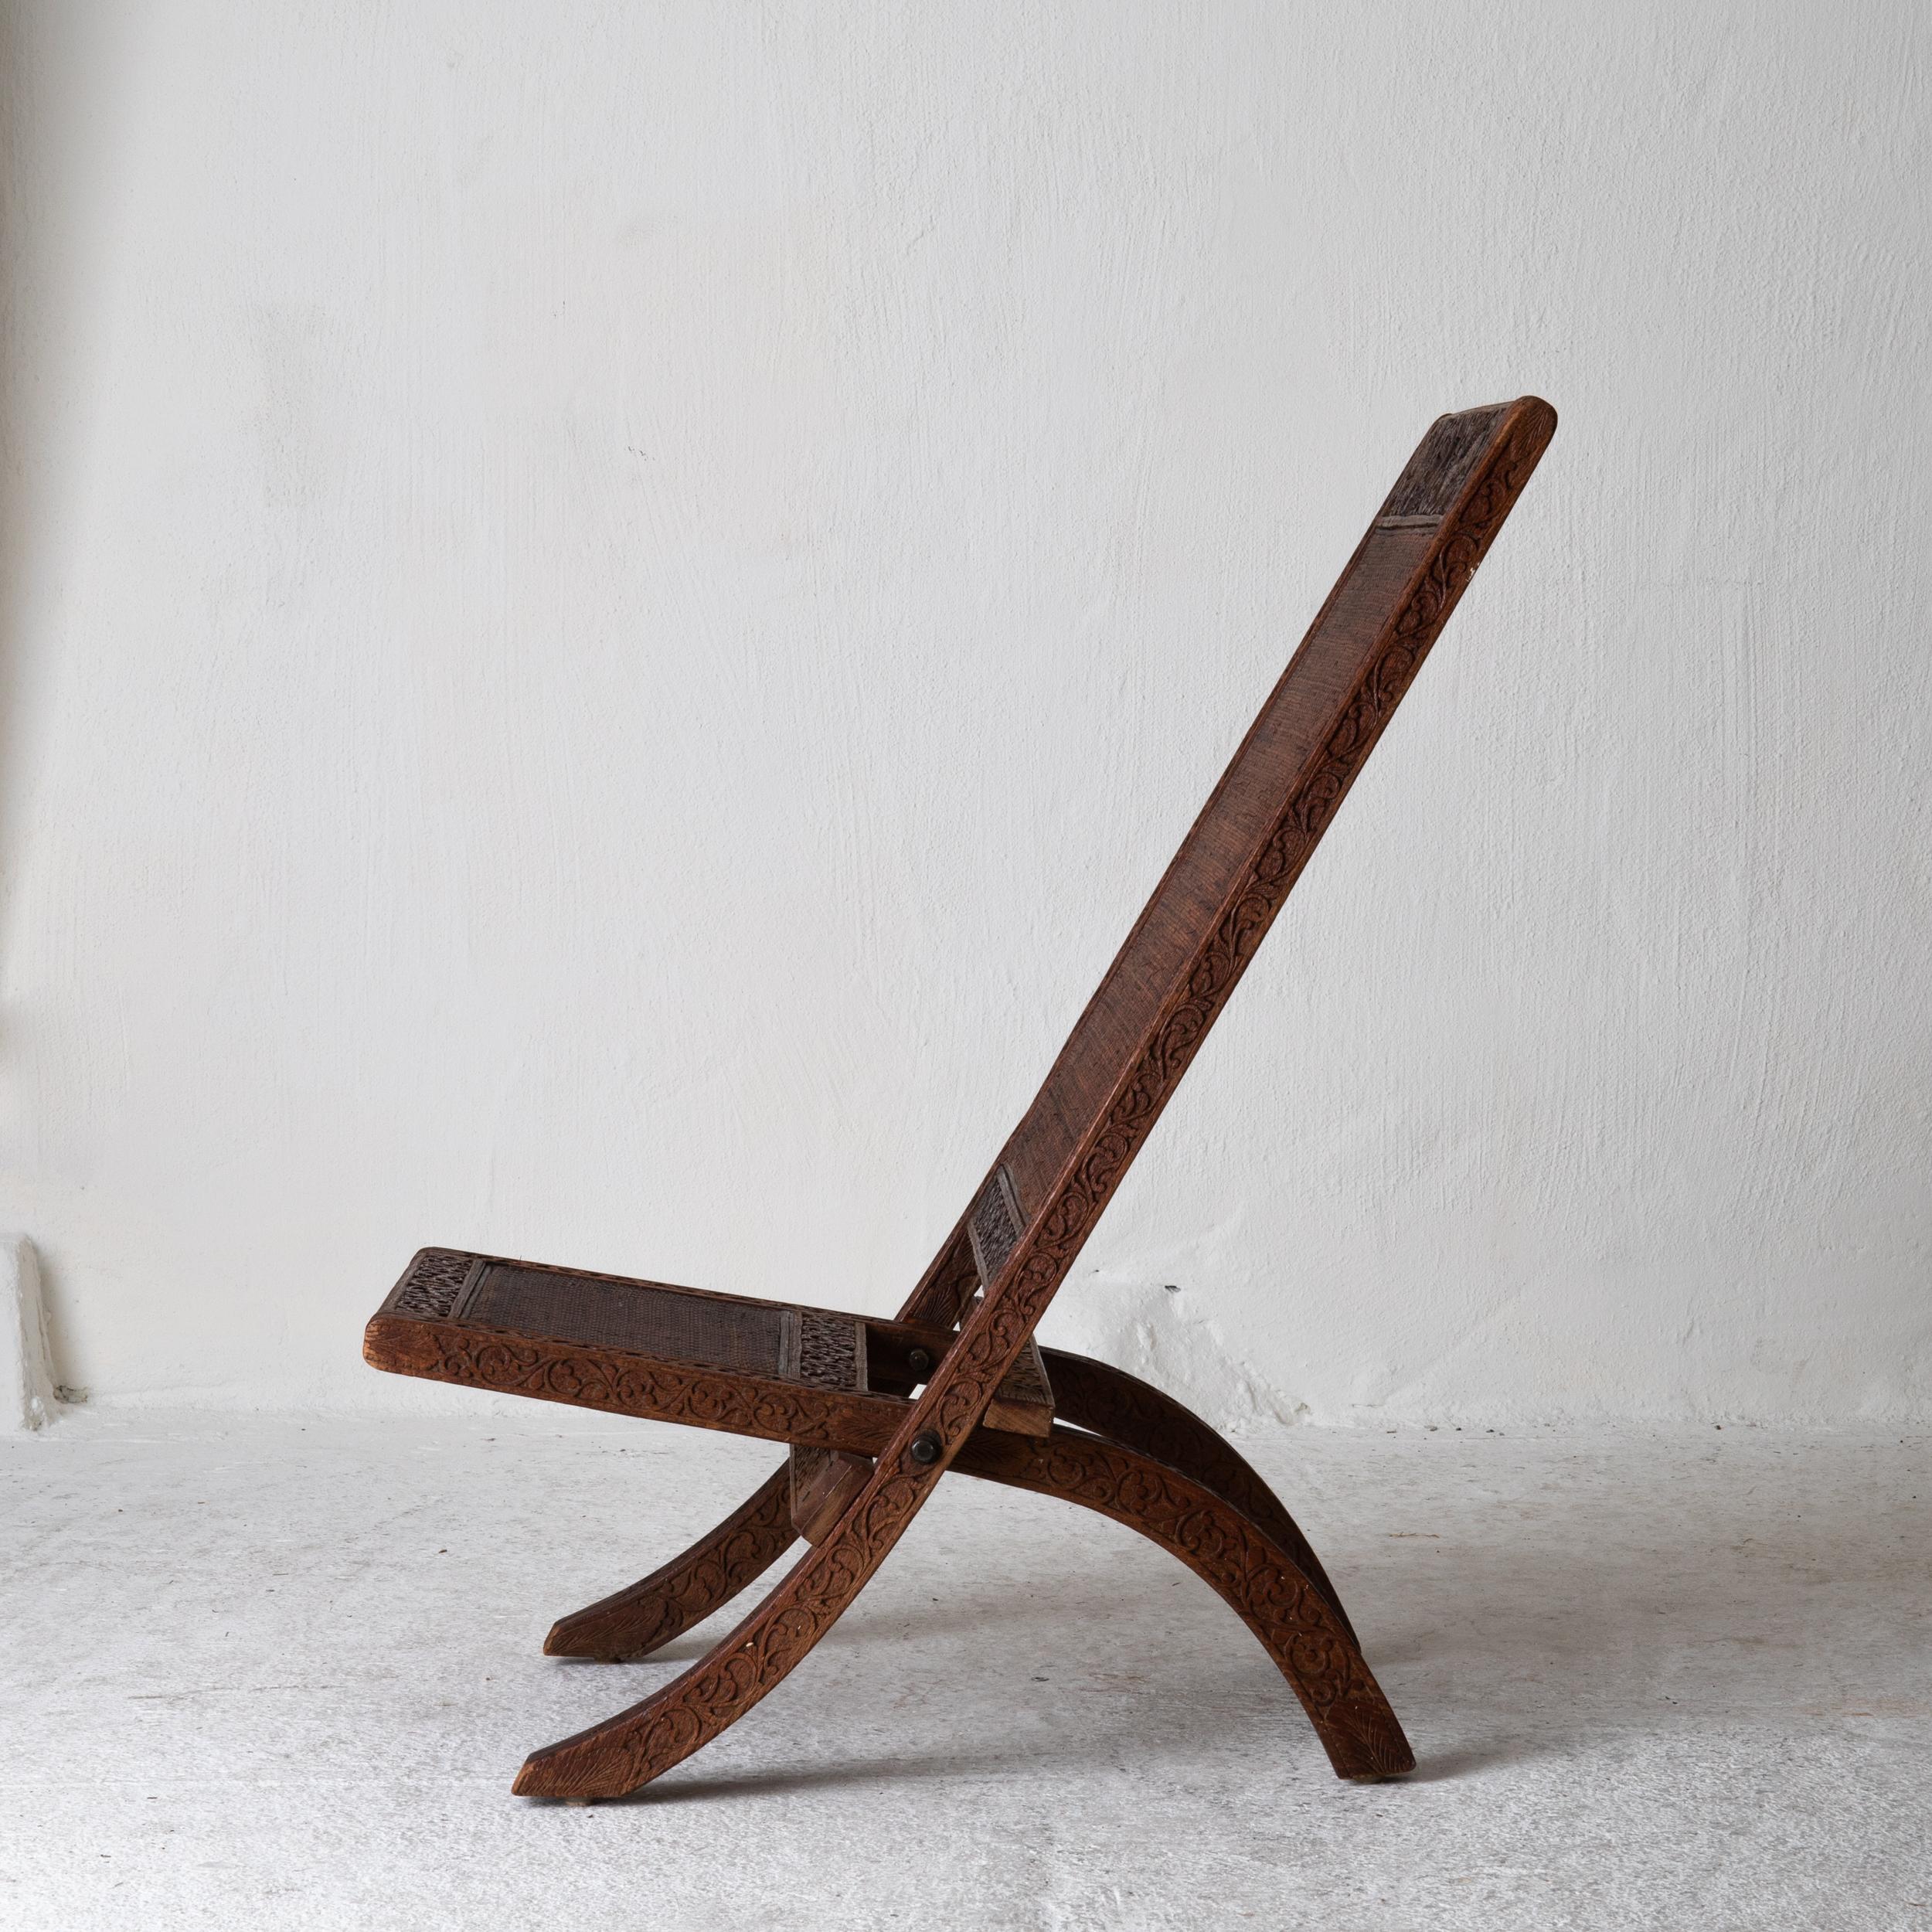 Stuhl faltbar Indien braun geschnitzt, 20. Jahrhundert, Indien. Ein klappbarer Stuhl, der zu Beginn des 20. Jahrhunderts in Indien hergestellt wurde. Geschnitzter Rahmen mit Elefanten, Vögeln und Blättern verziert. 

 